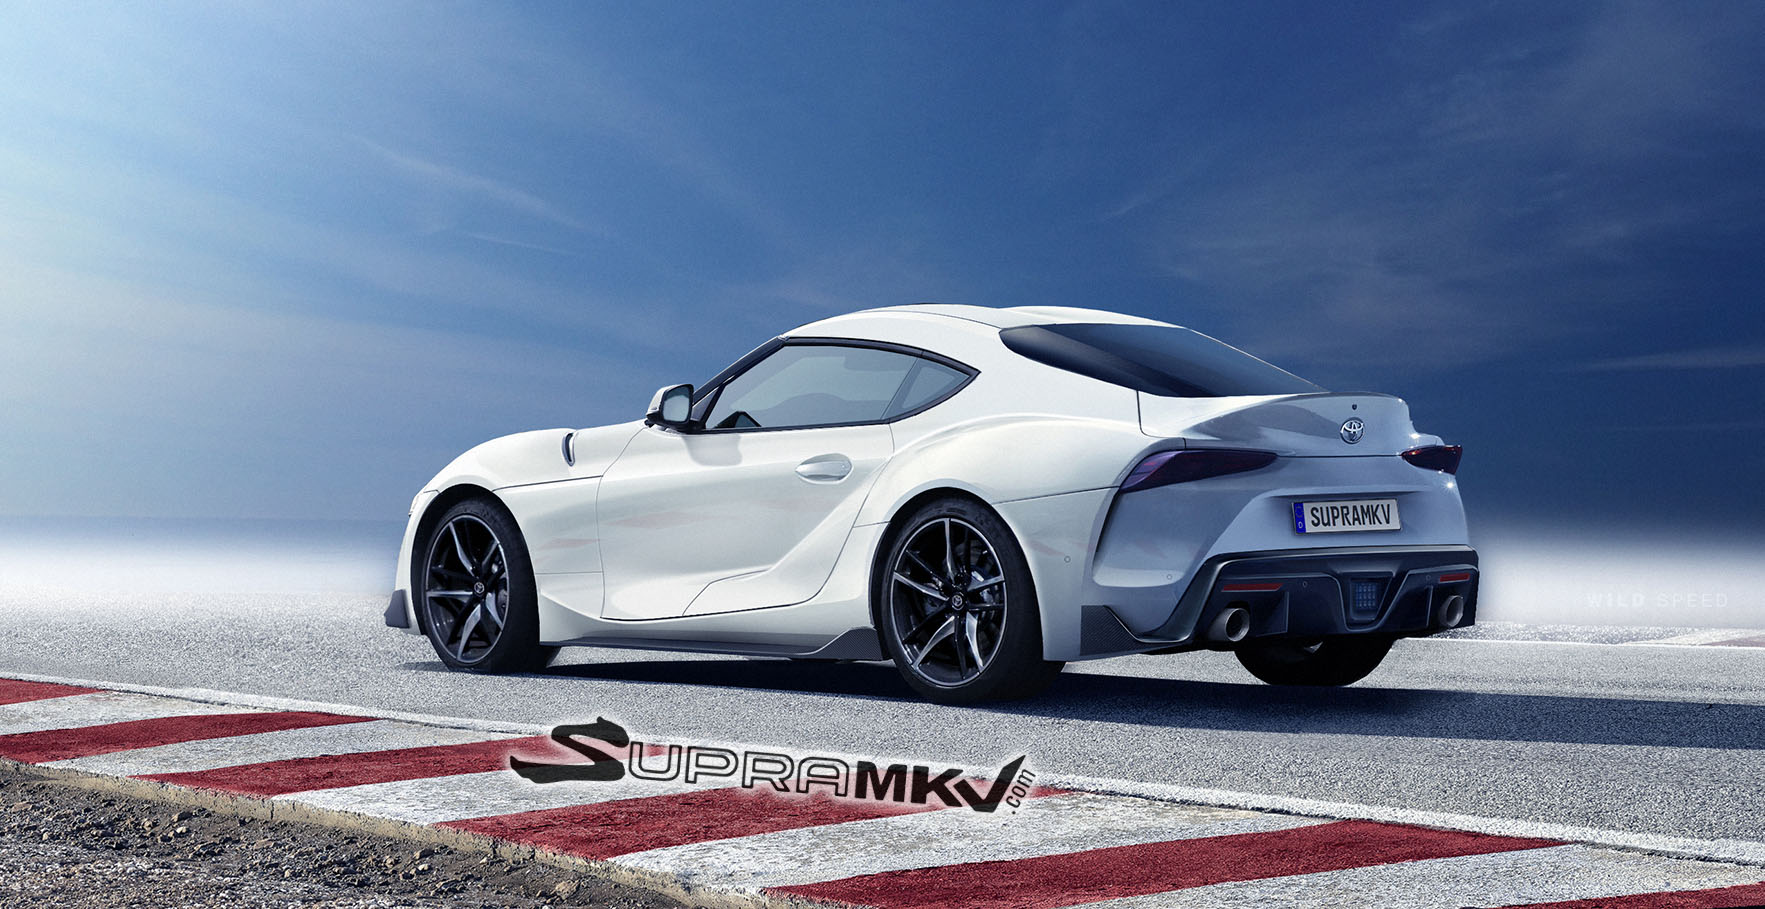 Supra MKV-rear-white1.jpg